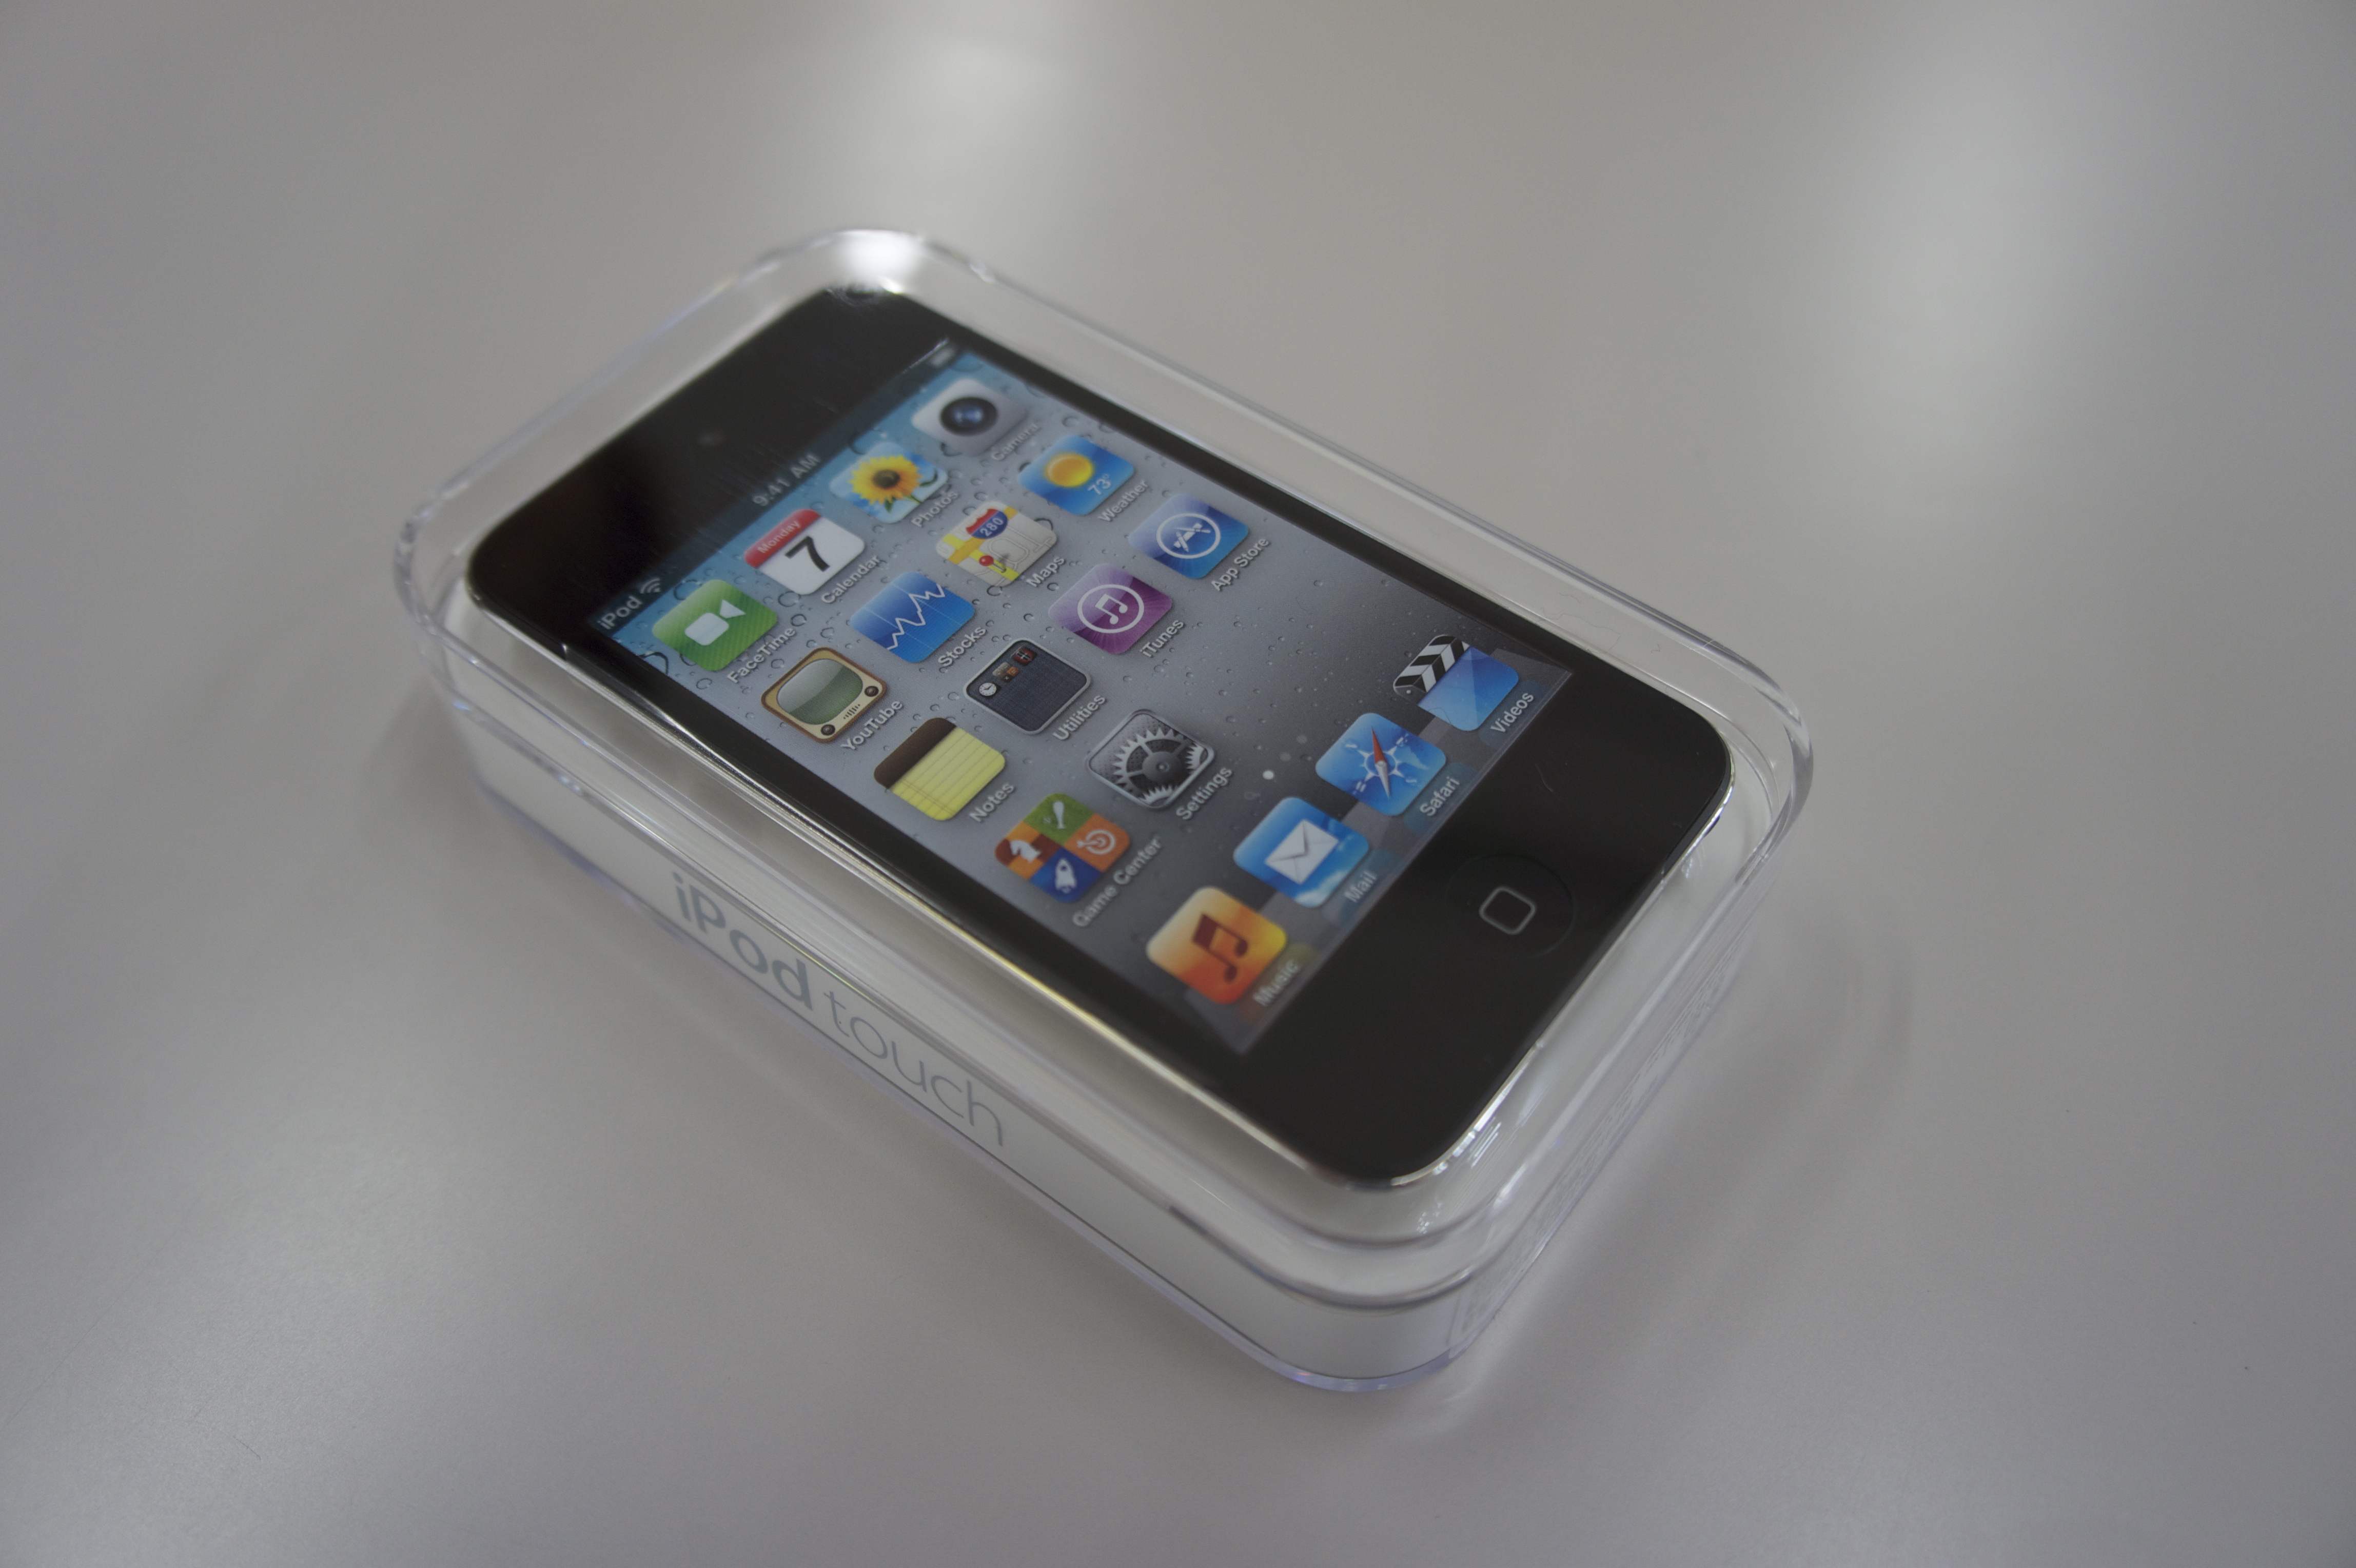 第４世代 新型 iPod touch レビュー! - マルチメディアのいろいろ 2.0